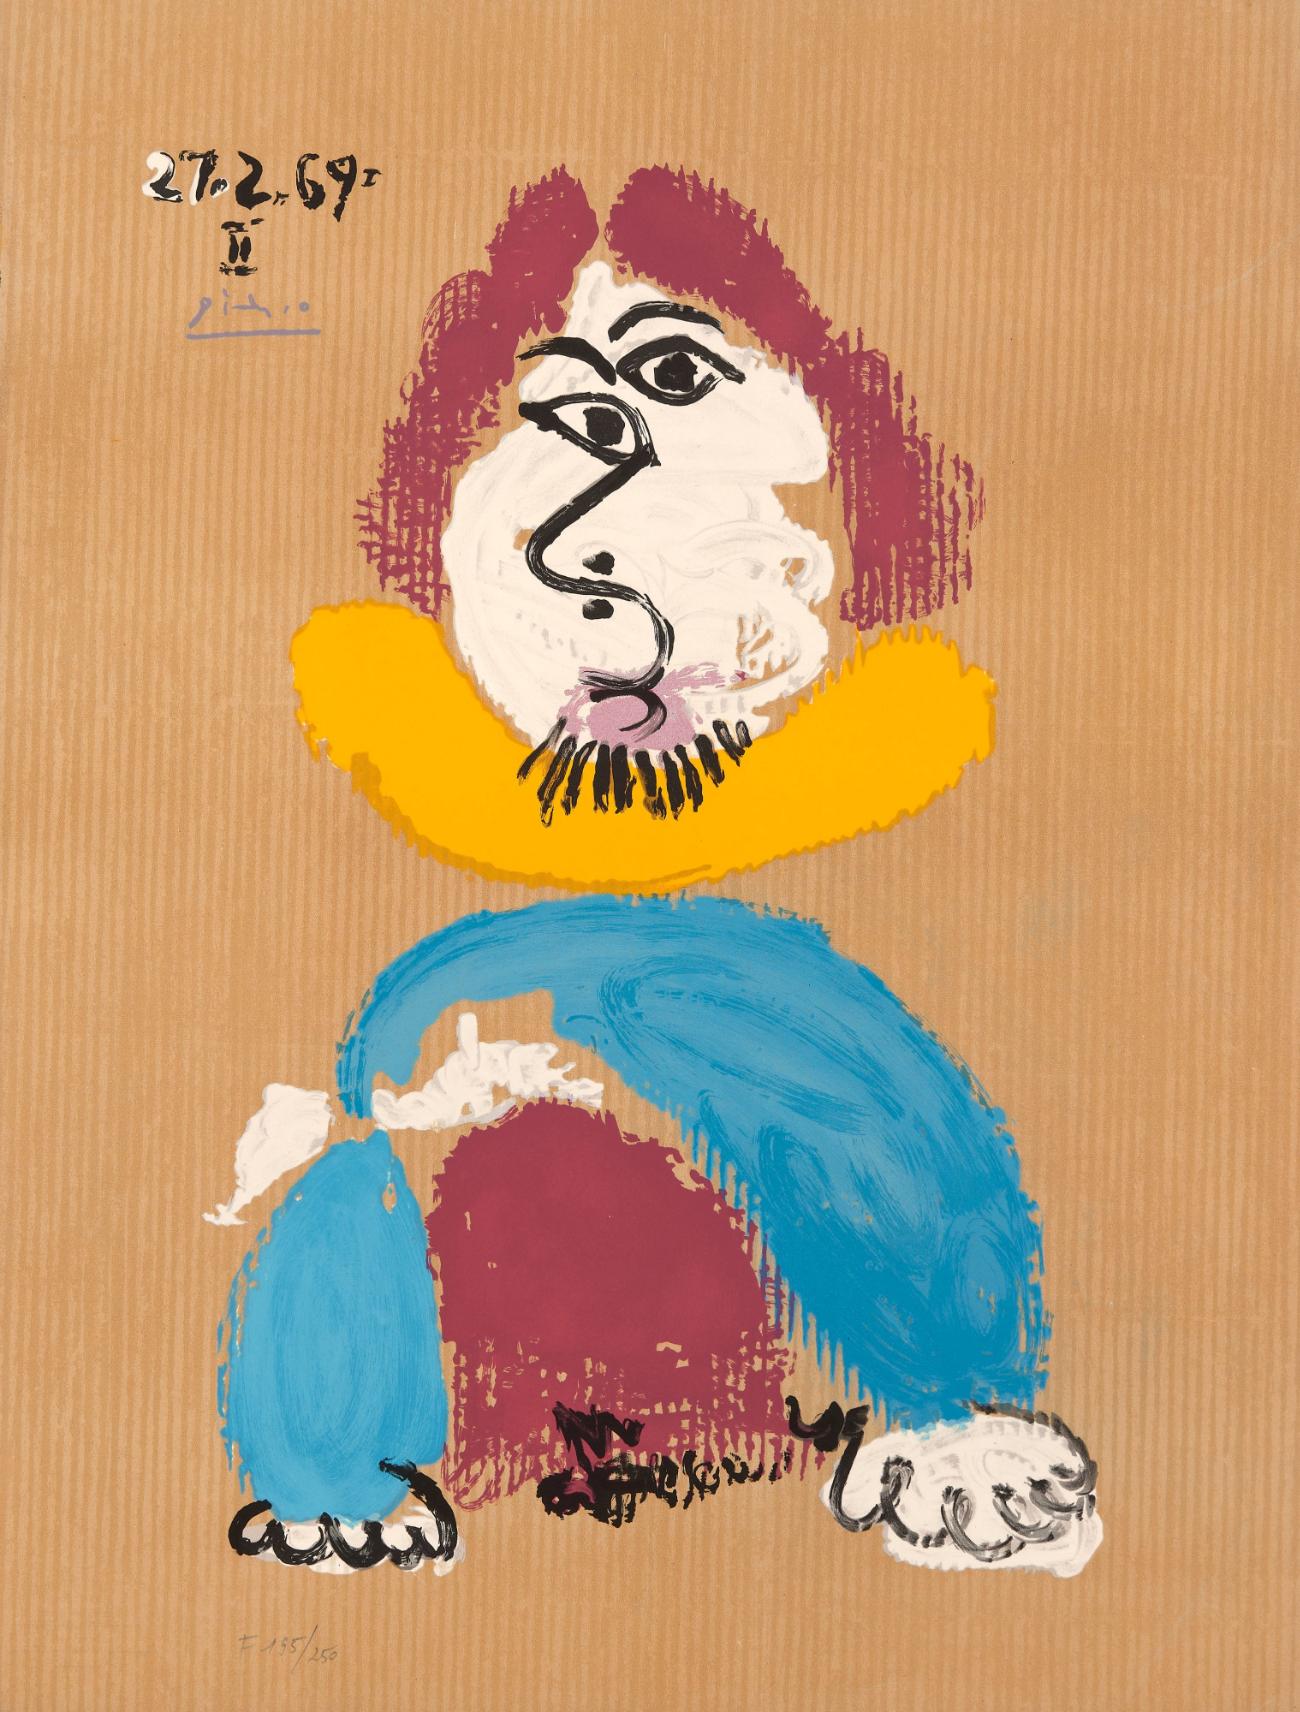 Figurative Print Pablo Picasso - Les portraits imaginaires : une assiette